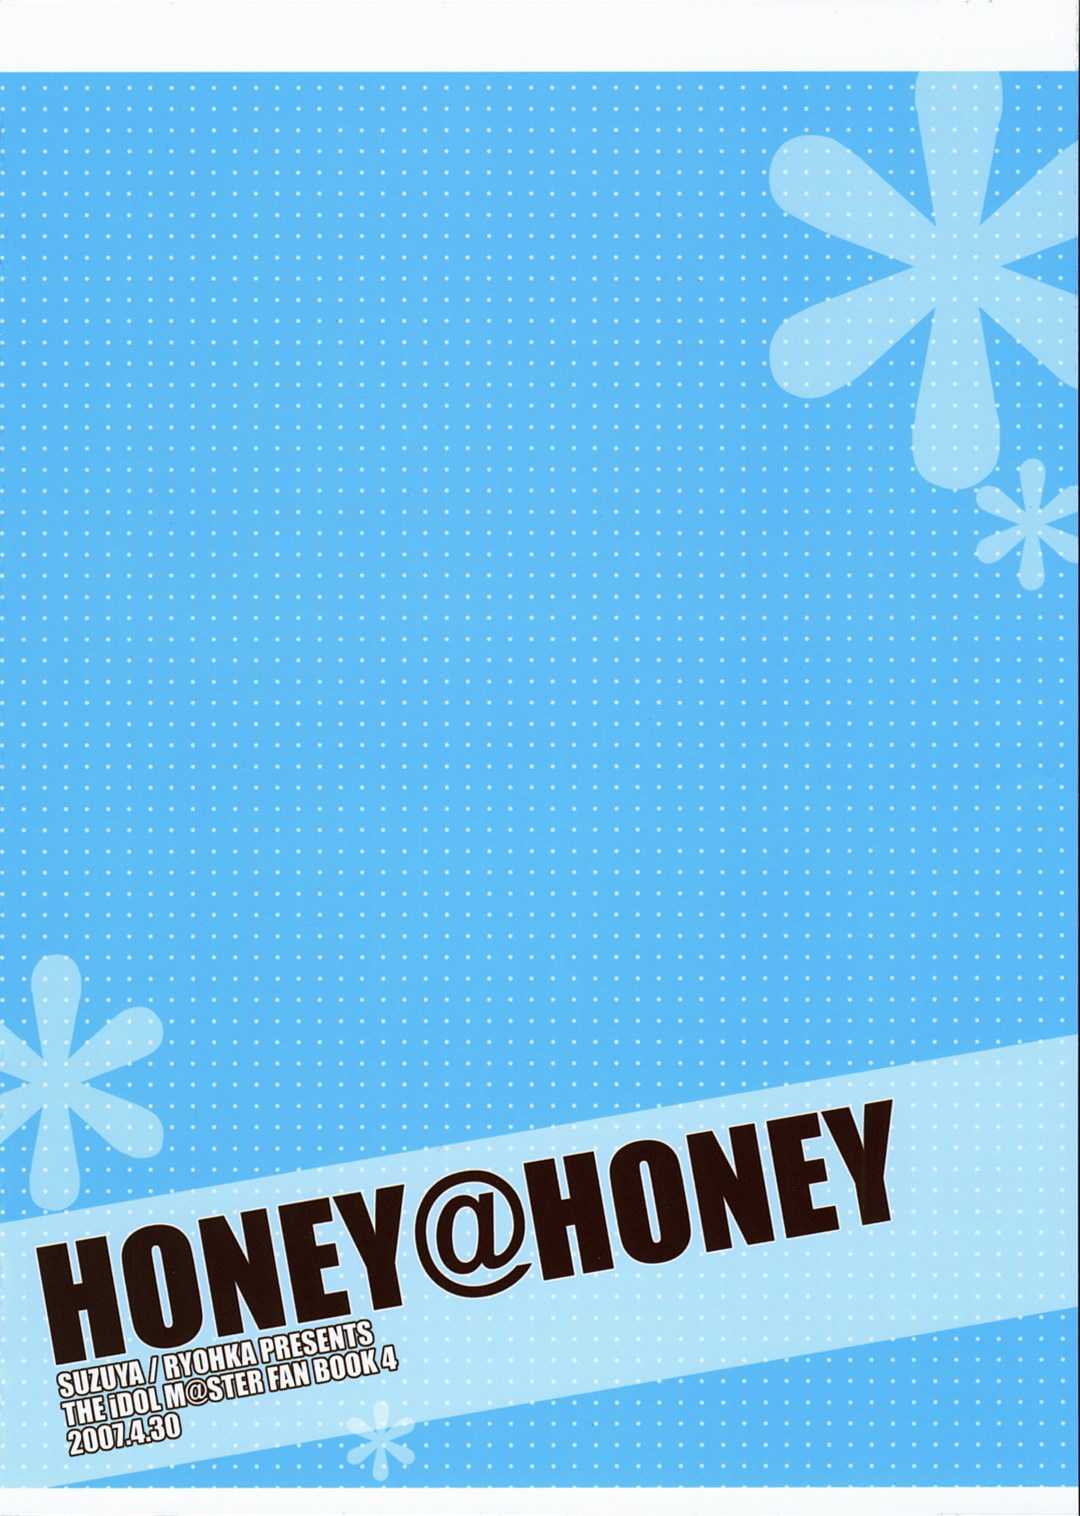 [Suzuya] HONEY@HONEY 